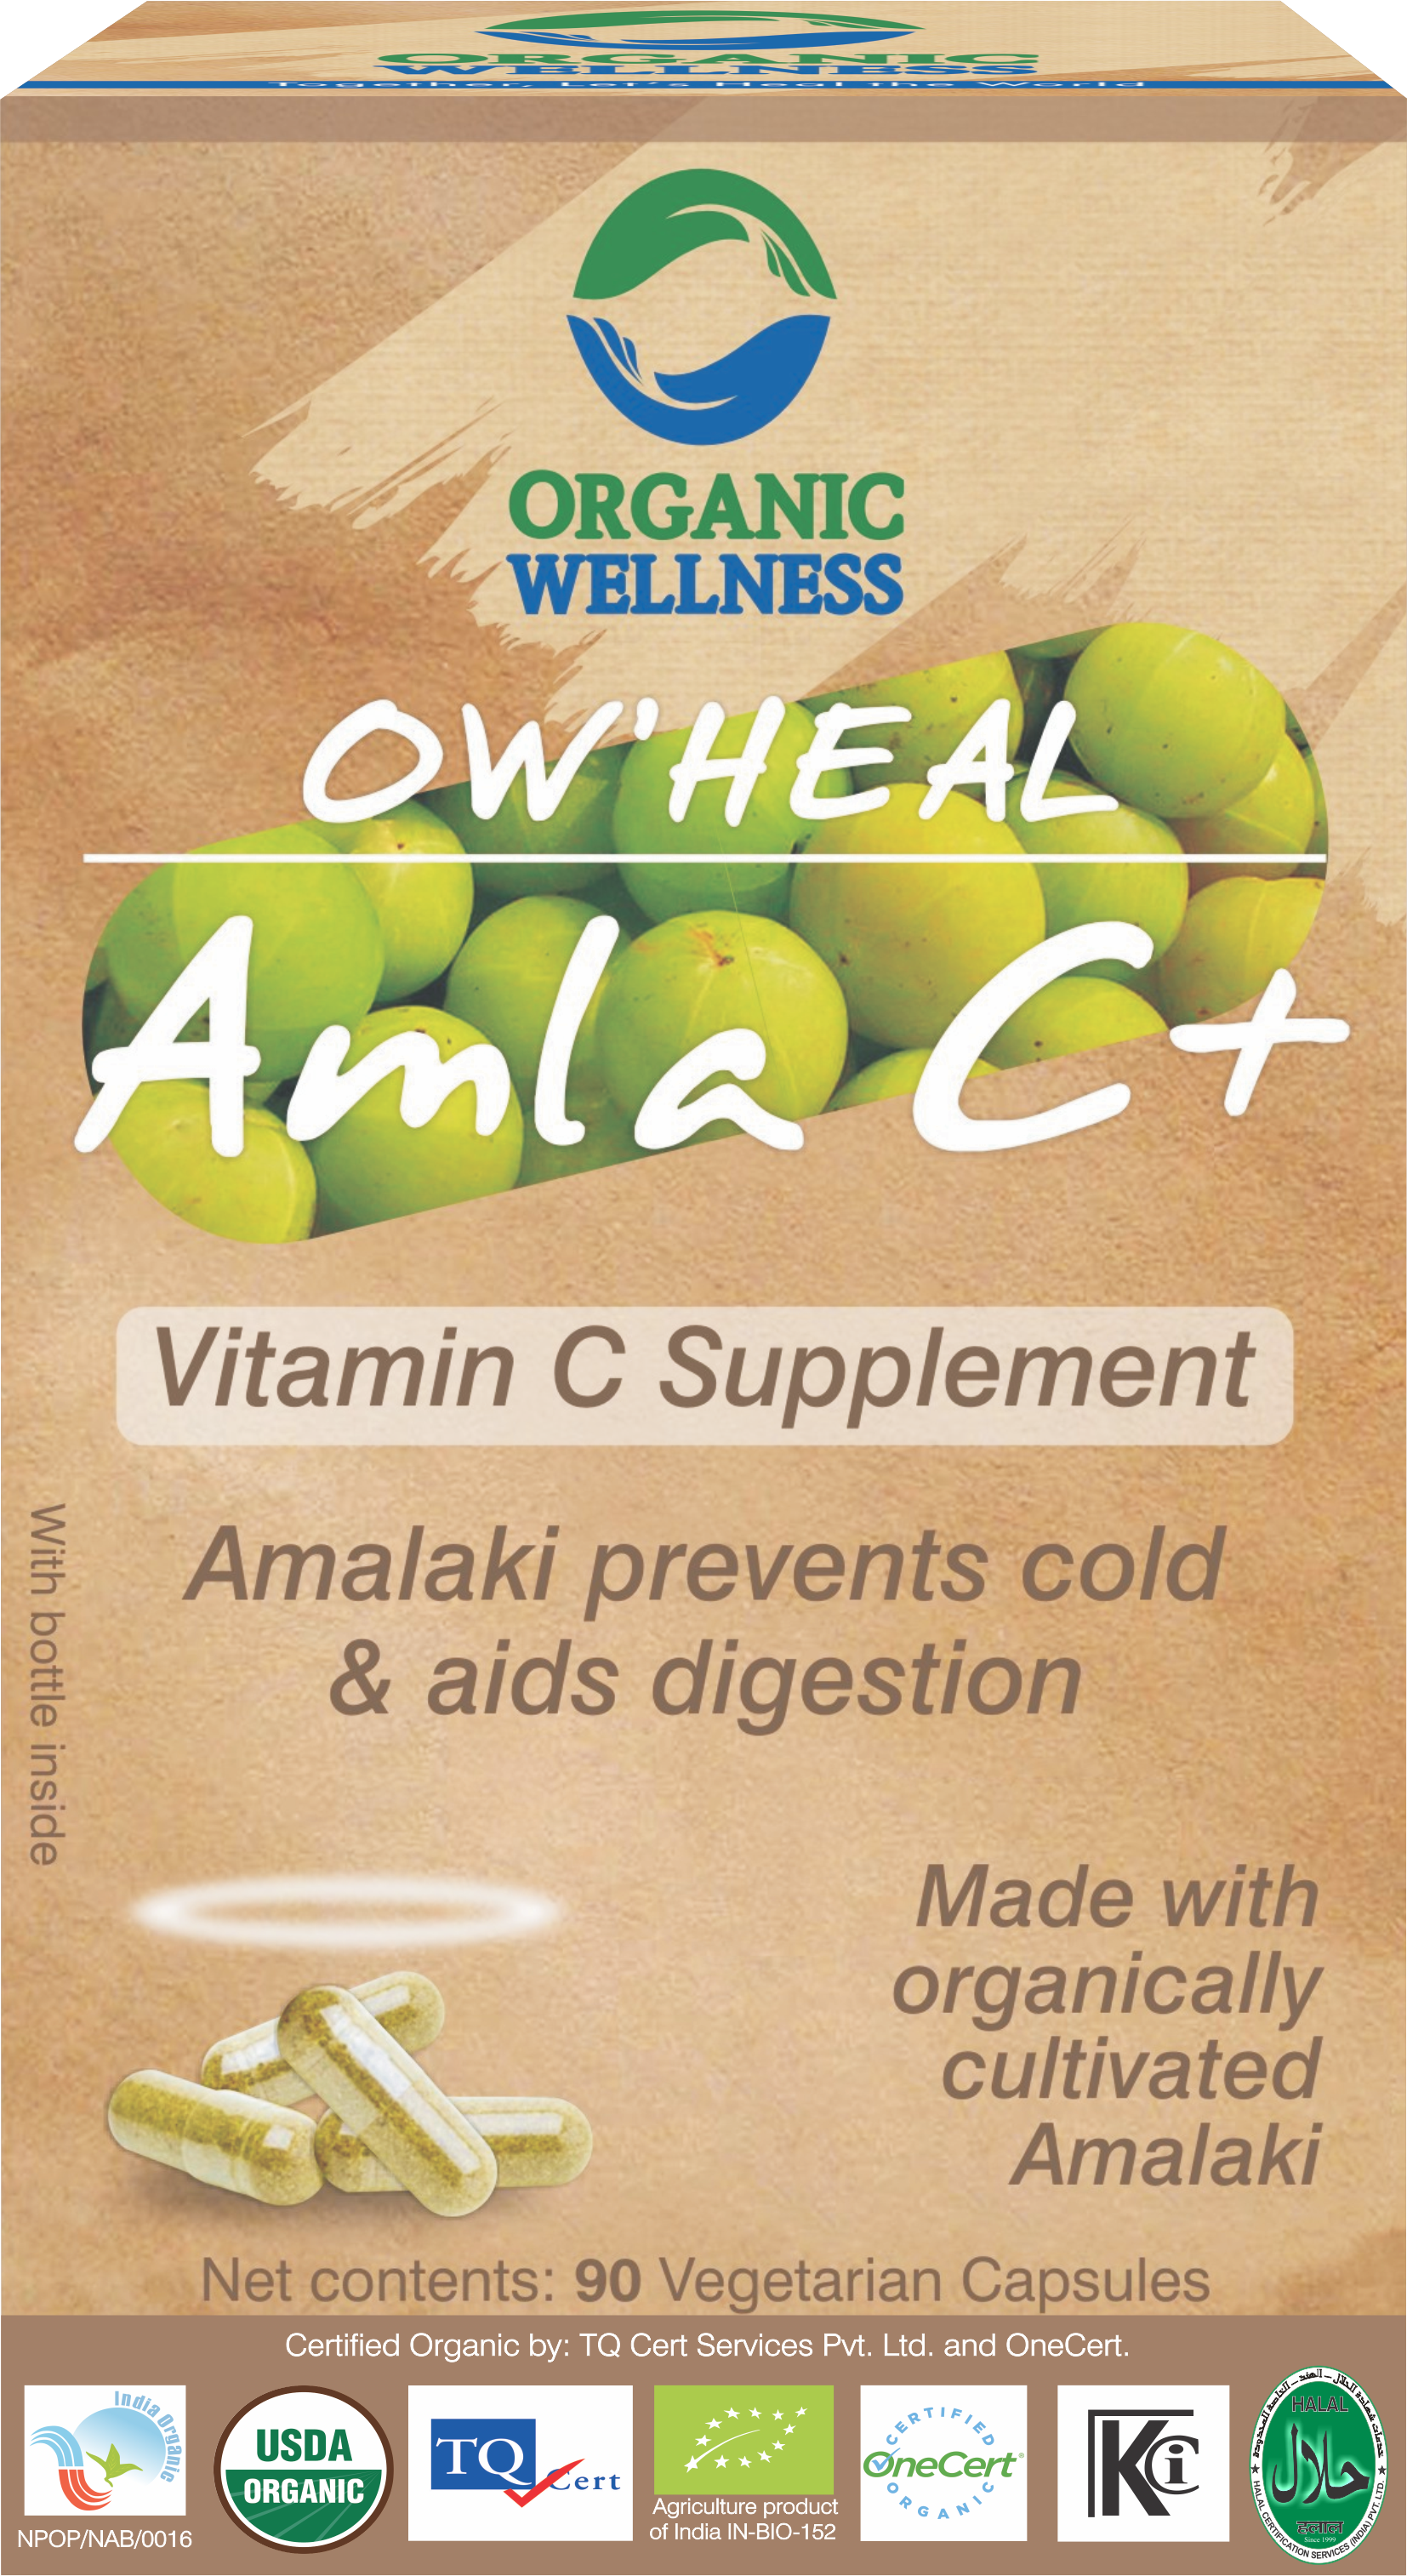 Buy Organic Wellness Heal Amla C Plus Capsule at Best Price Online